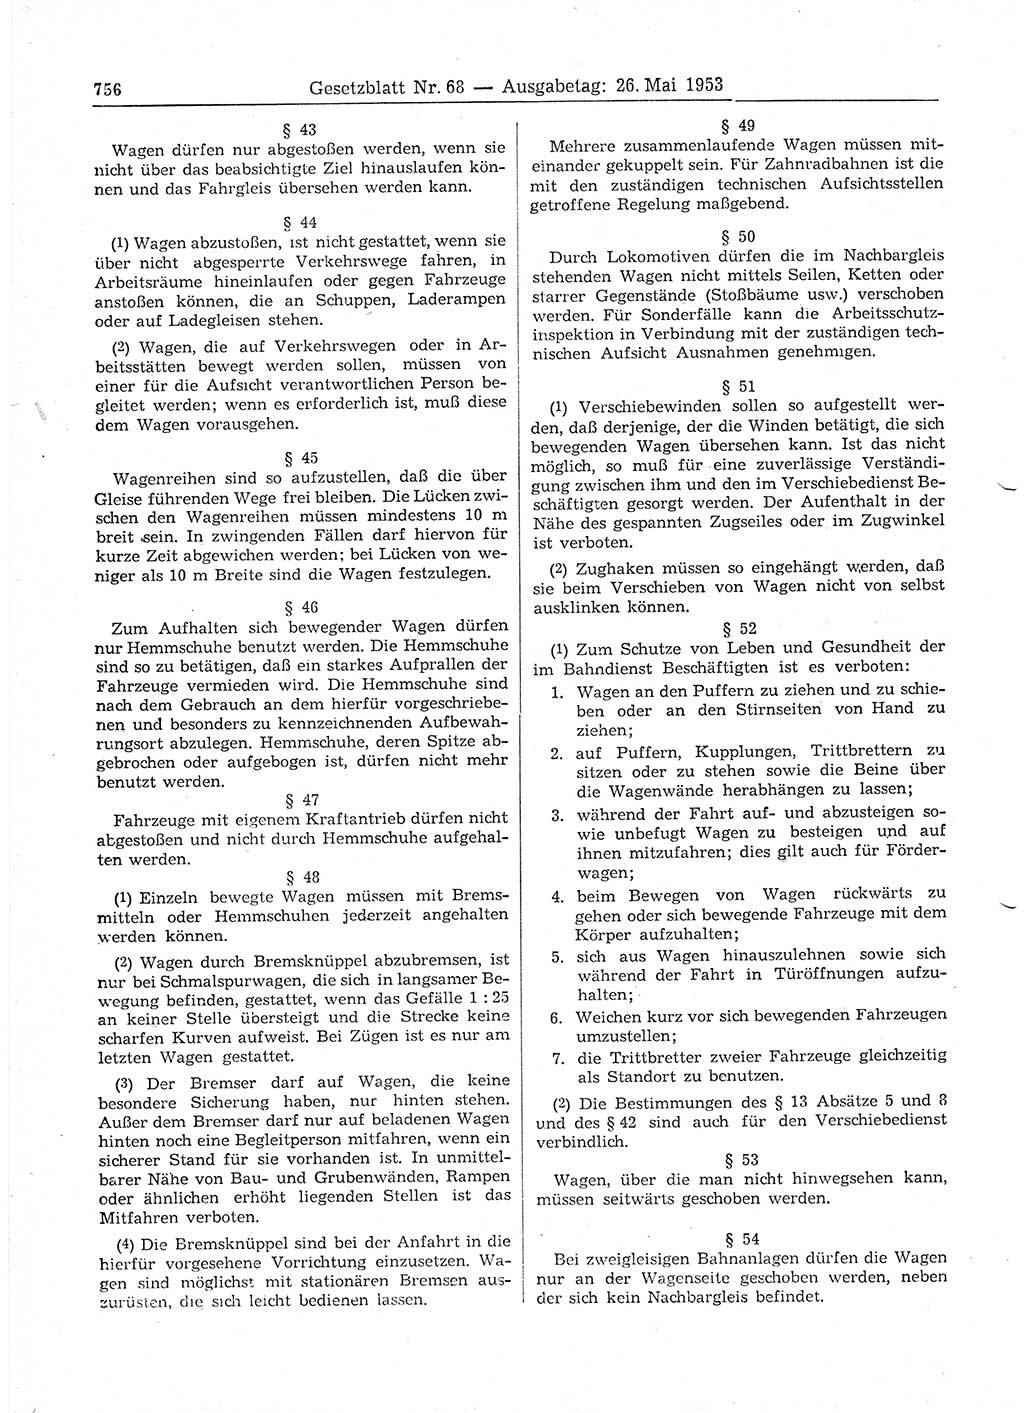 Gesetzblatt (GBl.) der Deutschen Demokratischen Republik (DDR) 1953, Seite 756 (GBl. DDR 1953, S. 756)